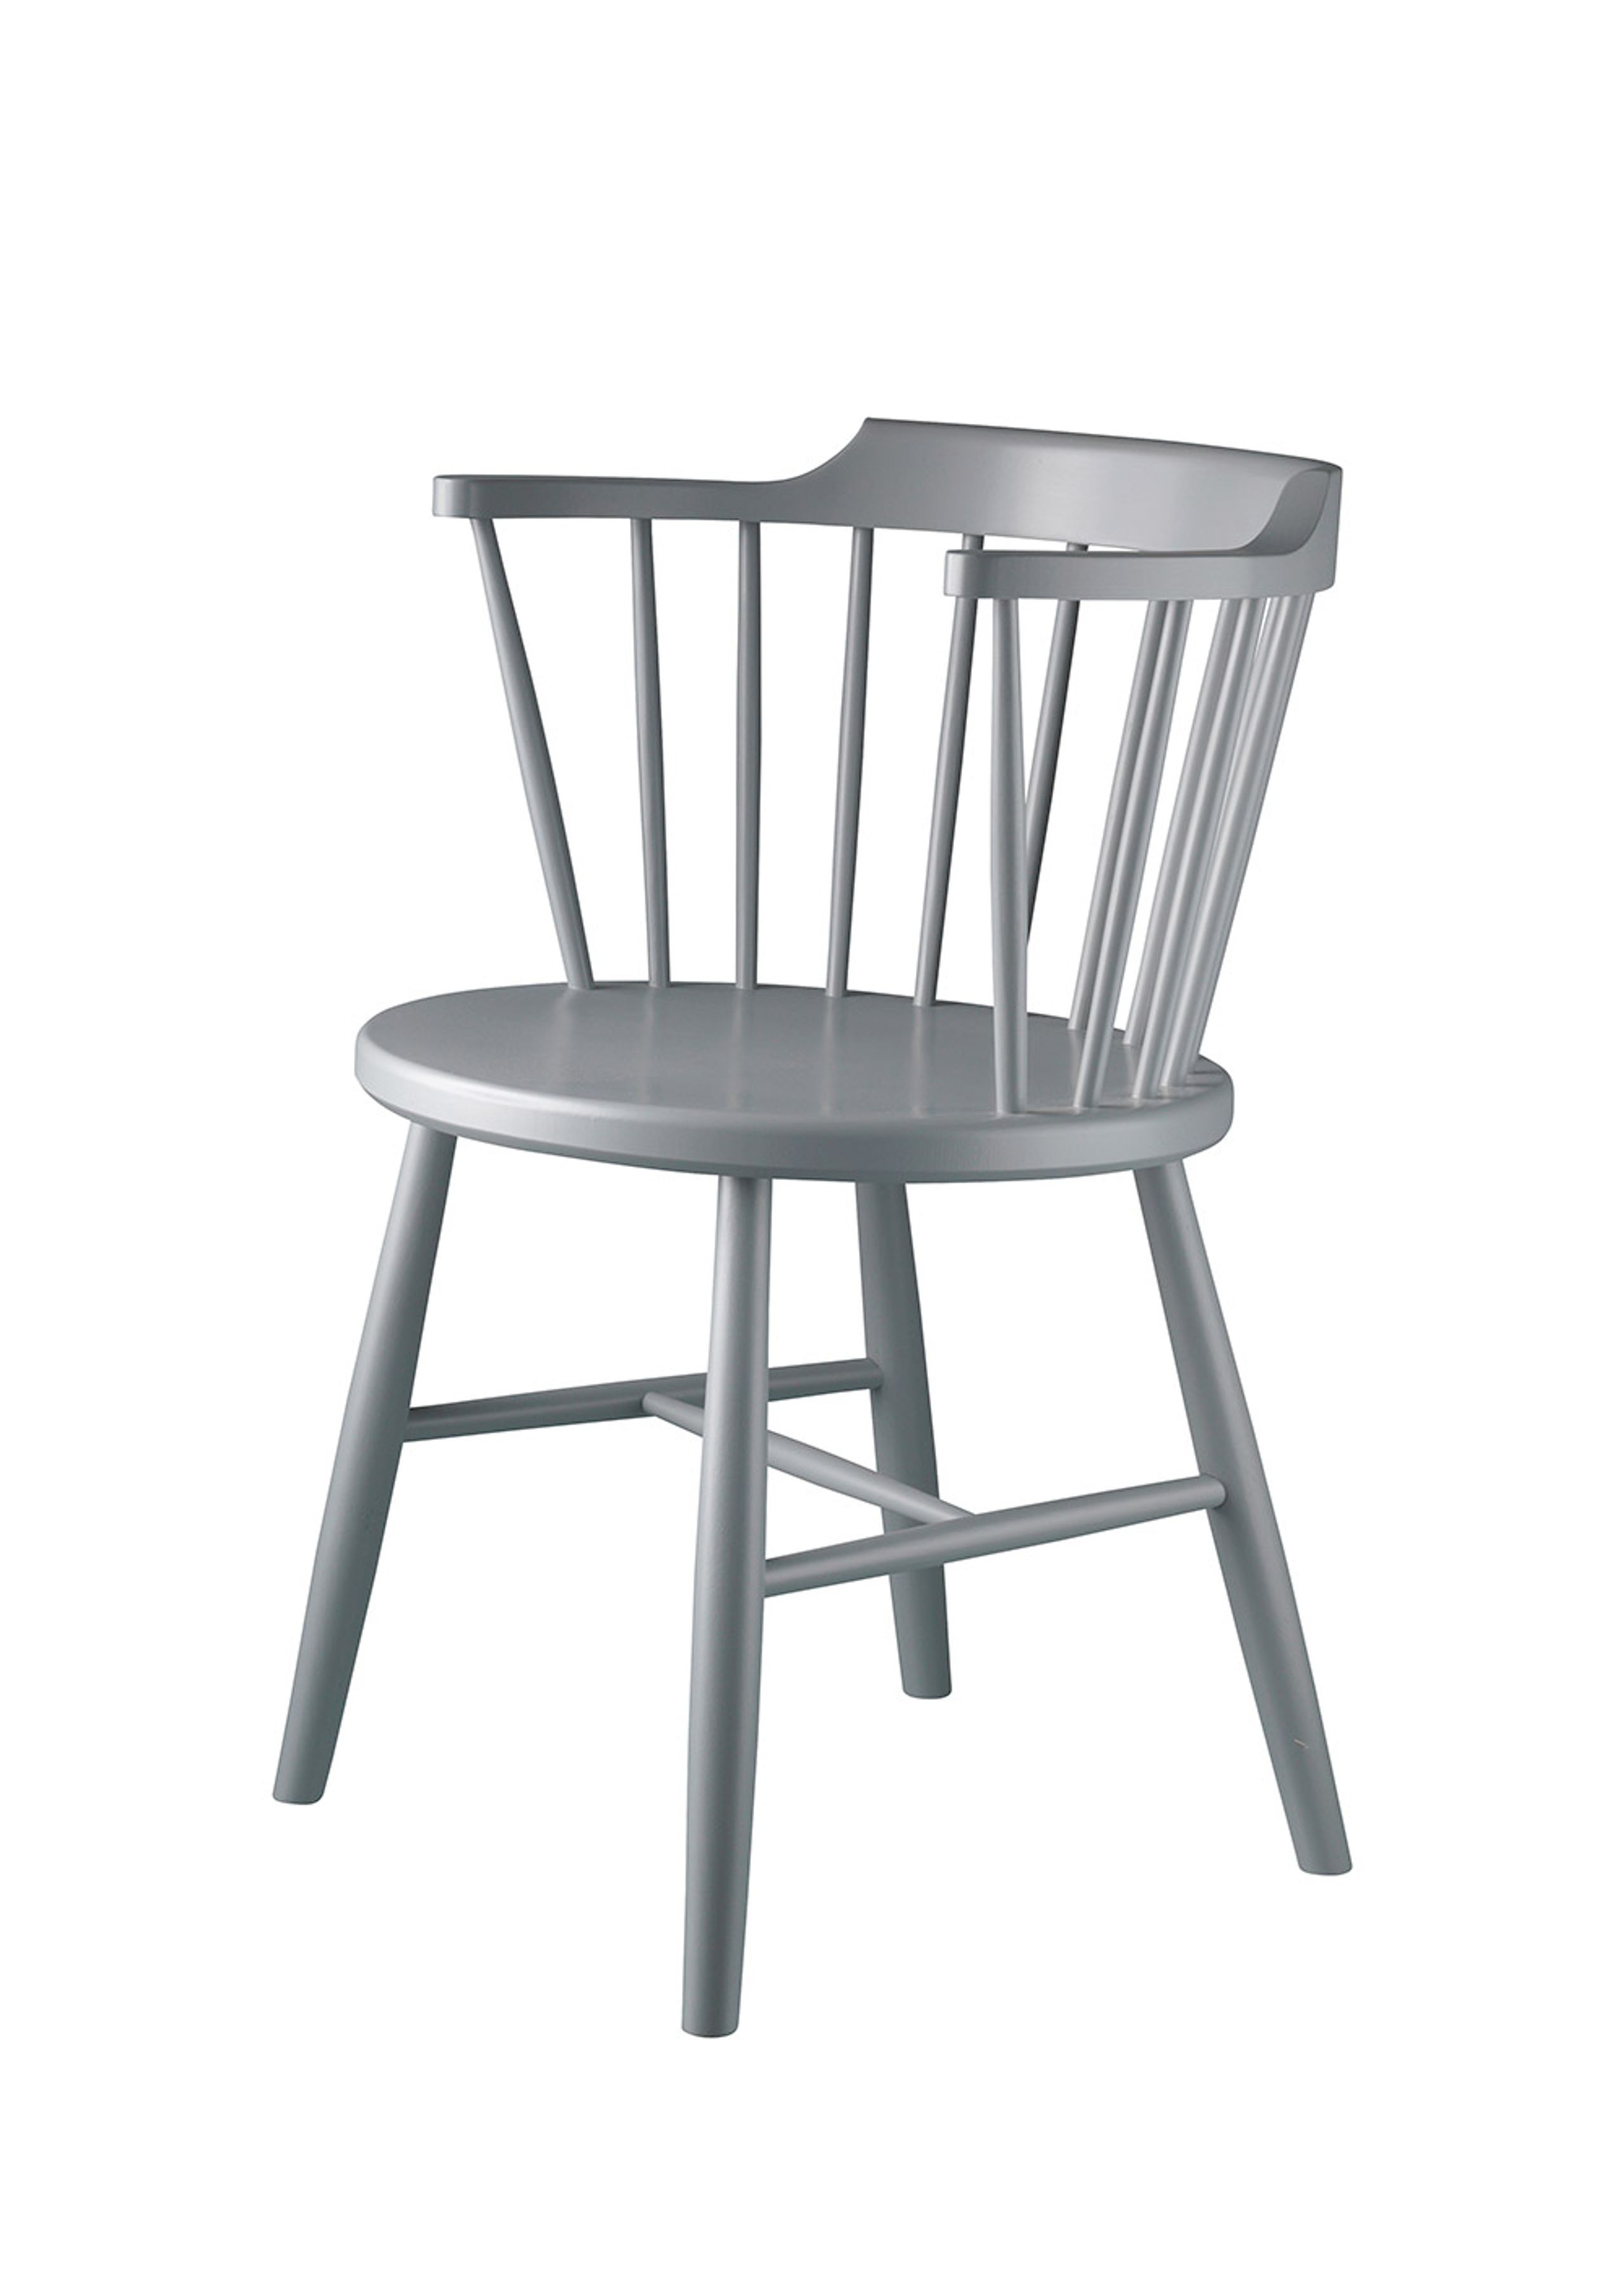 FDB Møbler / Furniture - Chaise - J18 by Børge Mogensen - Beech / Light Grey